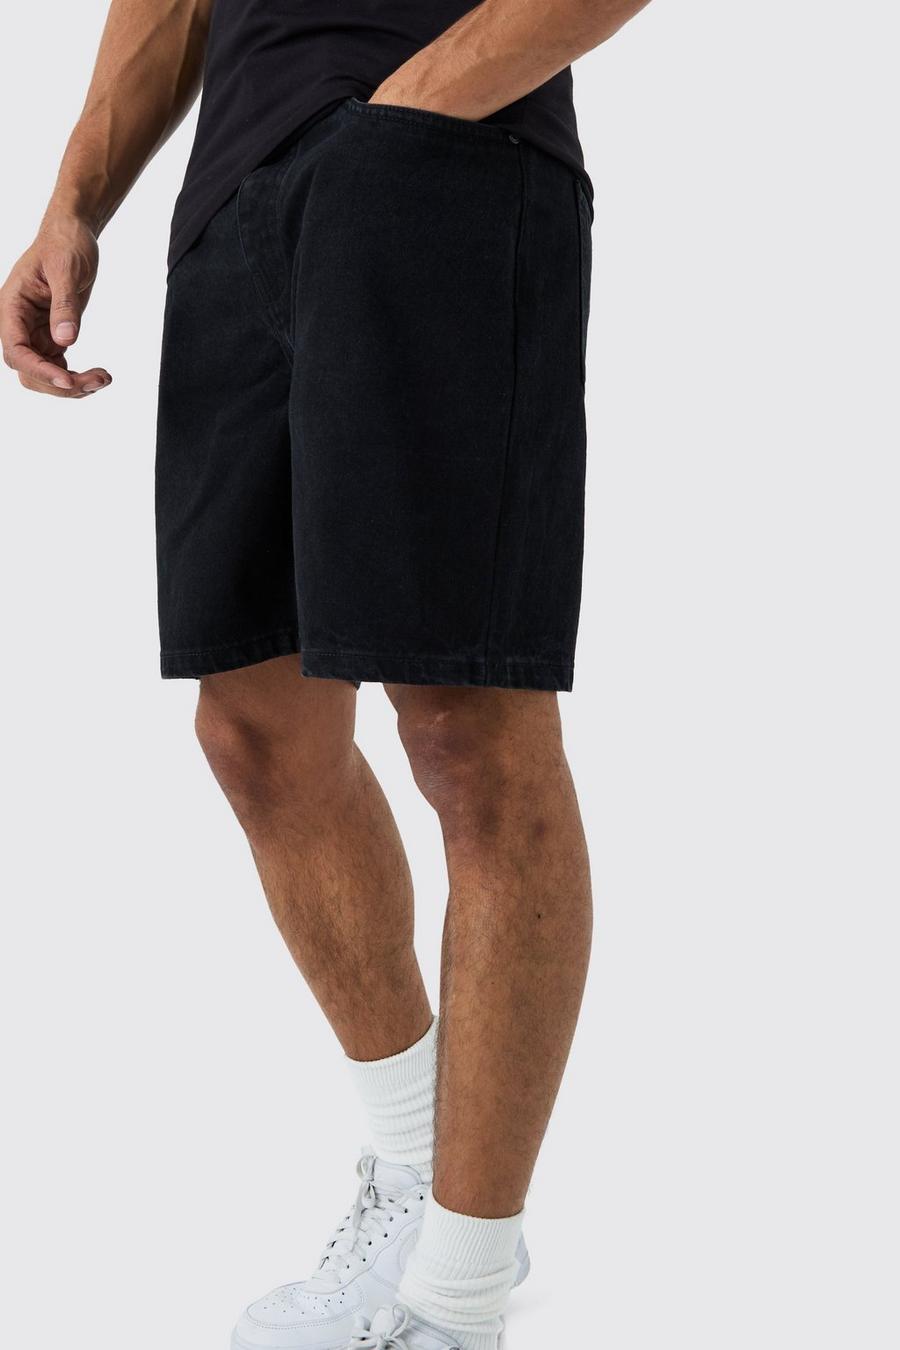 Pantalones cortos vaqueros holgados sin tratar en negro, True black